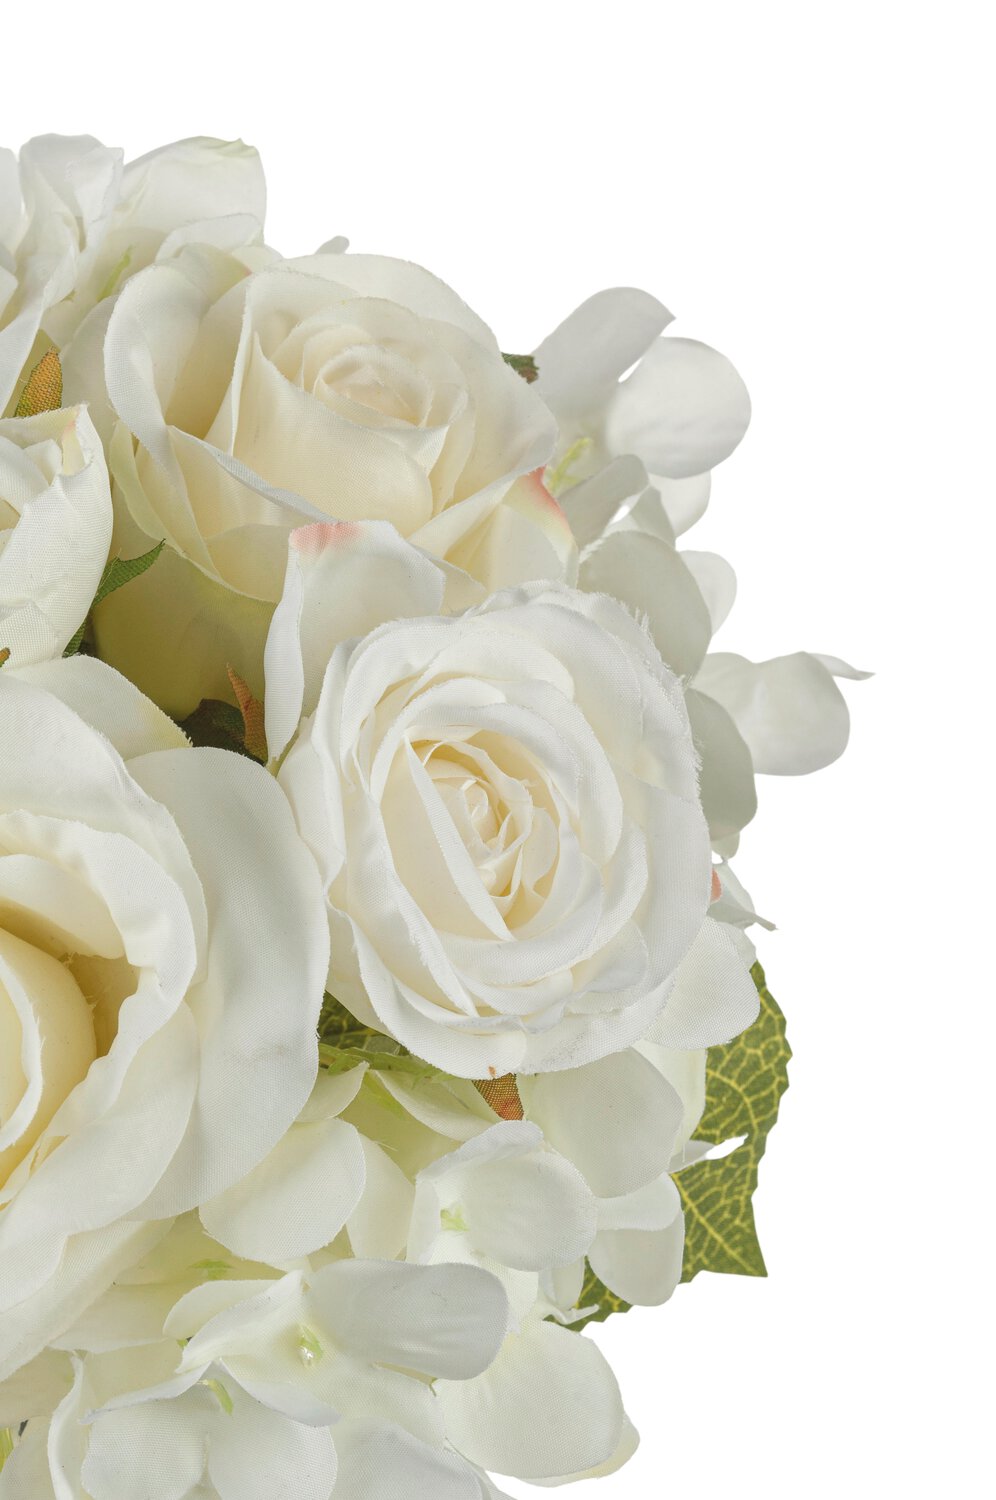 Kunststrauß aus Rosen und Hortensien, 9 Stück, 25 cm, weiß